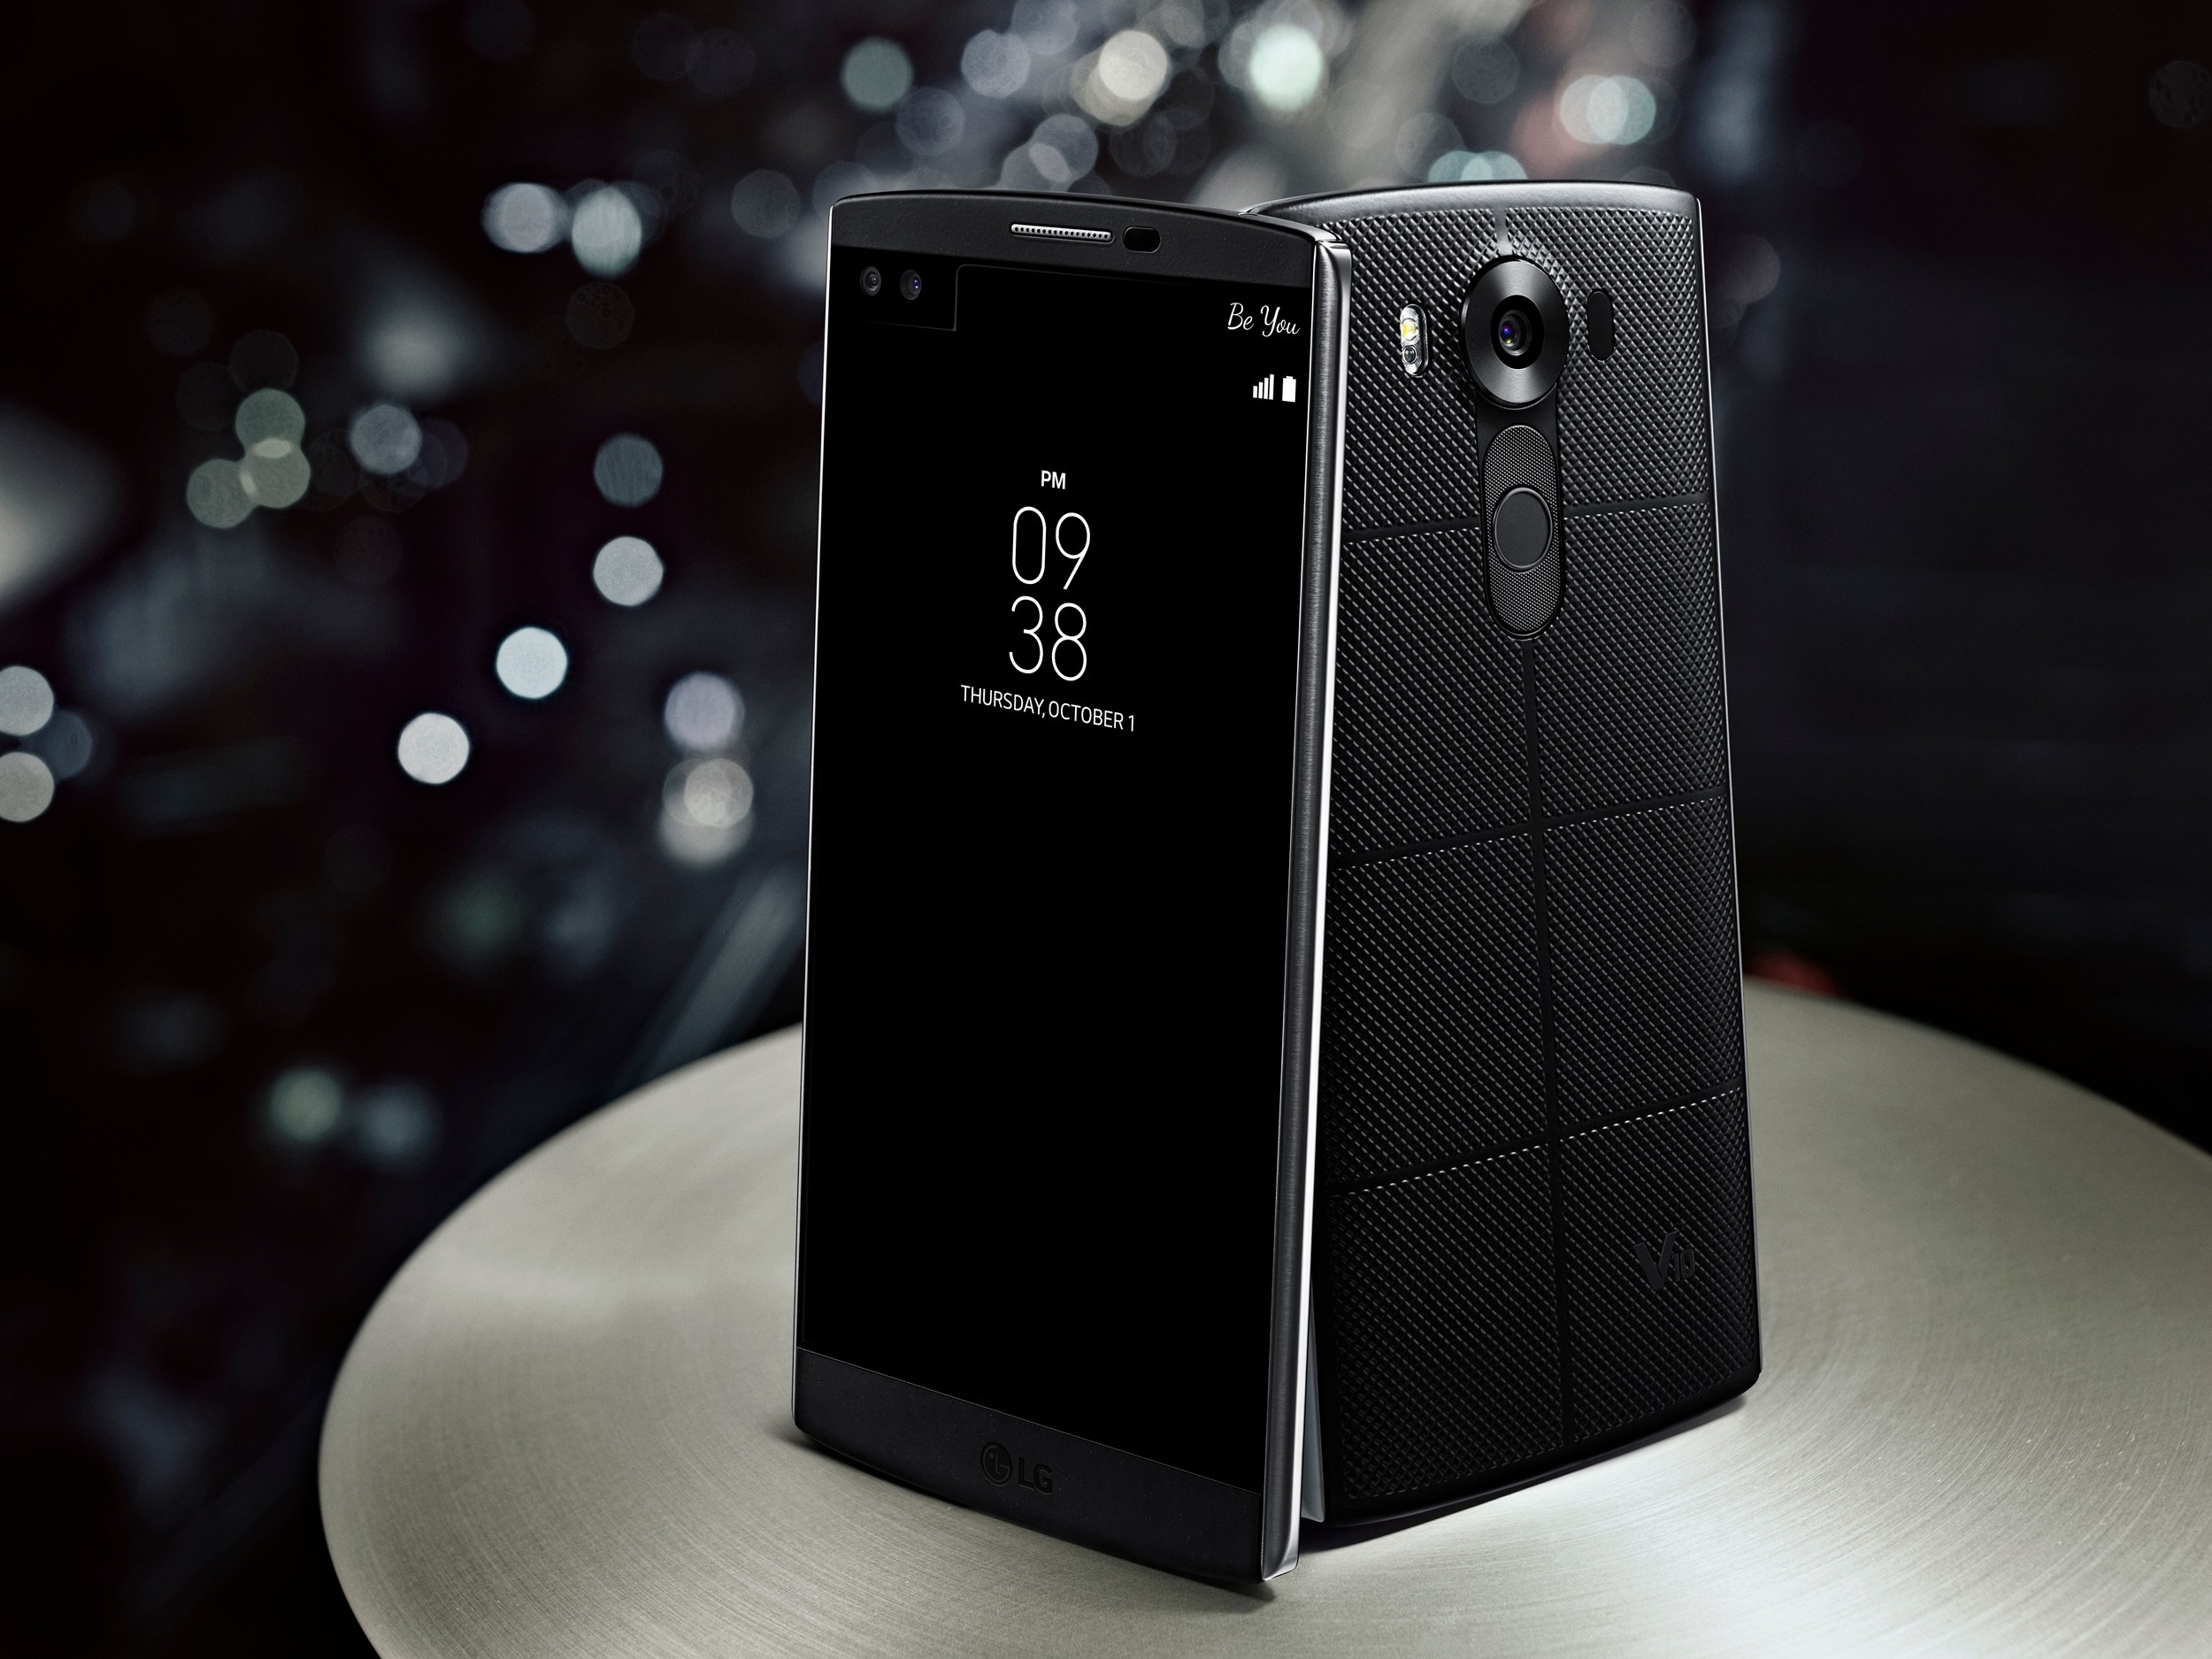 Teruskan kejayaan V10, LG V20 ponsel pertama gunakan Nougat